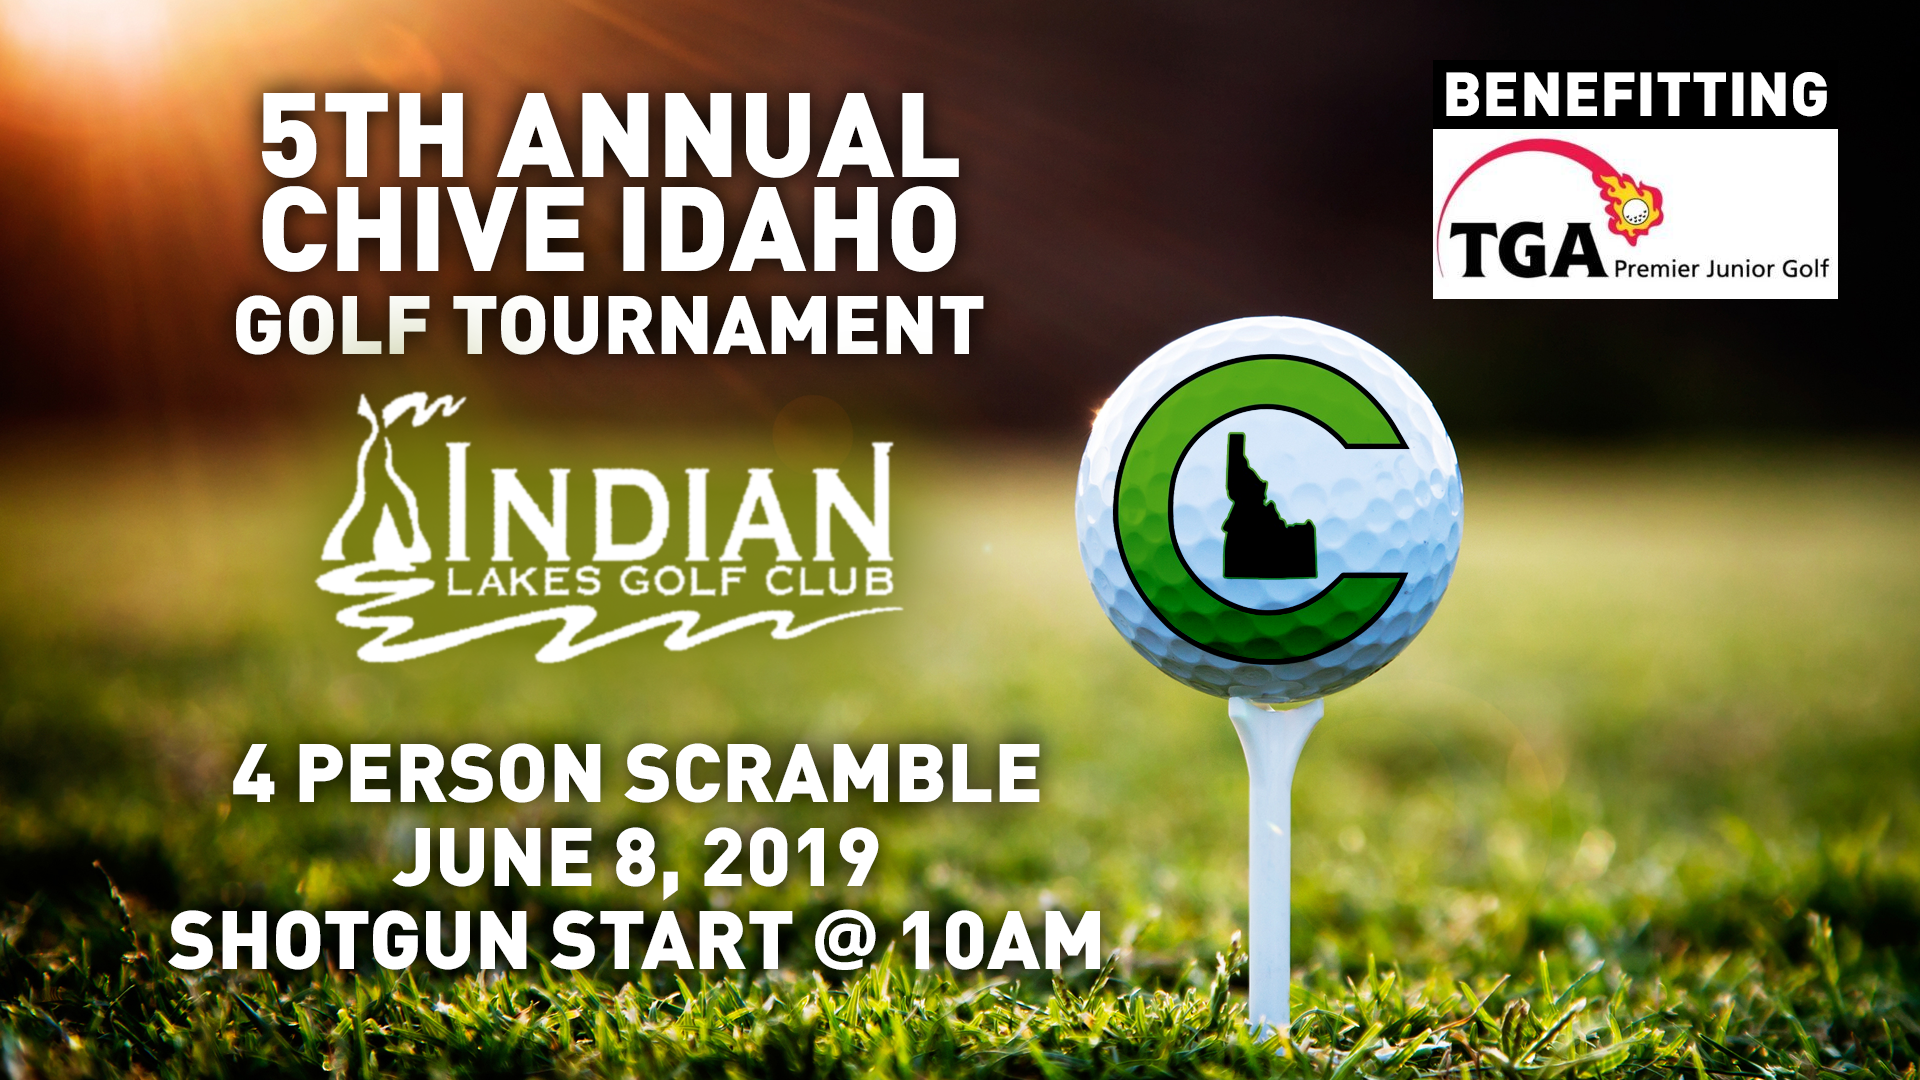 Chive Idaho 5th Annual Golf Tournament